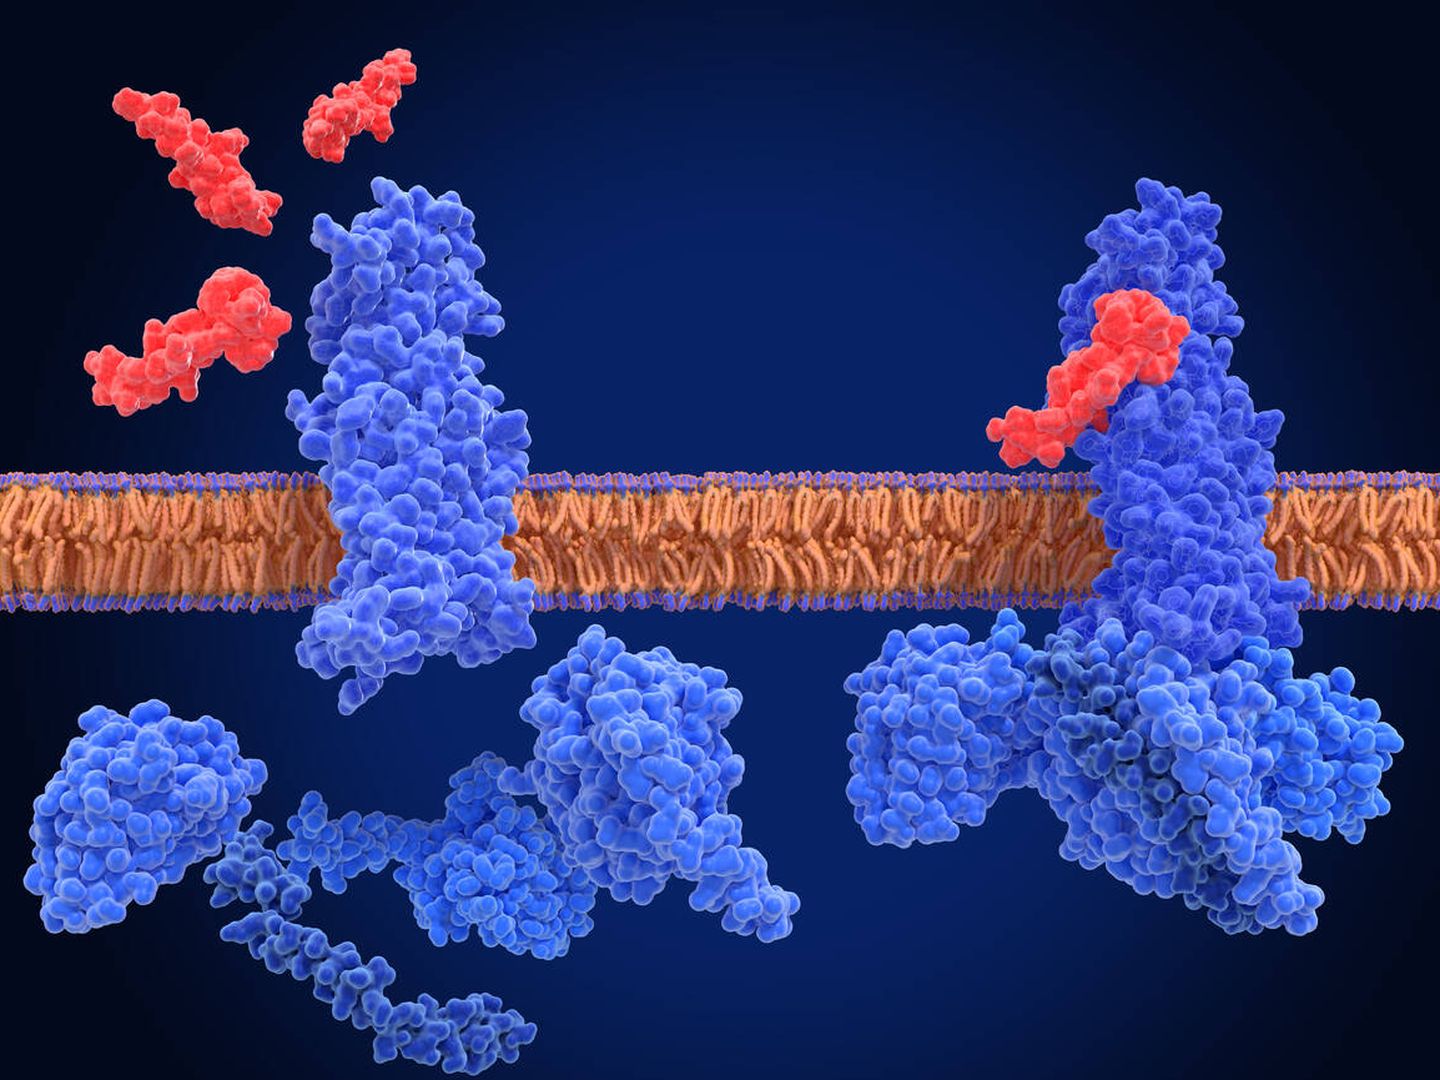 El receptor del péptido-1 (GLP-1) similar al glucagón, forma inactiva (izquierda) y complejo activo con un agonista (semaglutida) y proteínas G. (iStock)